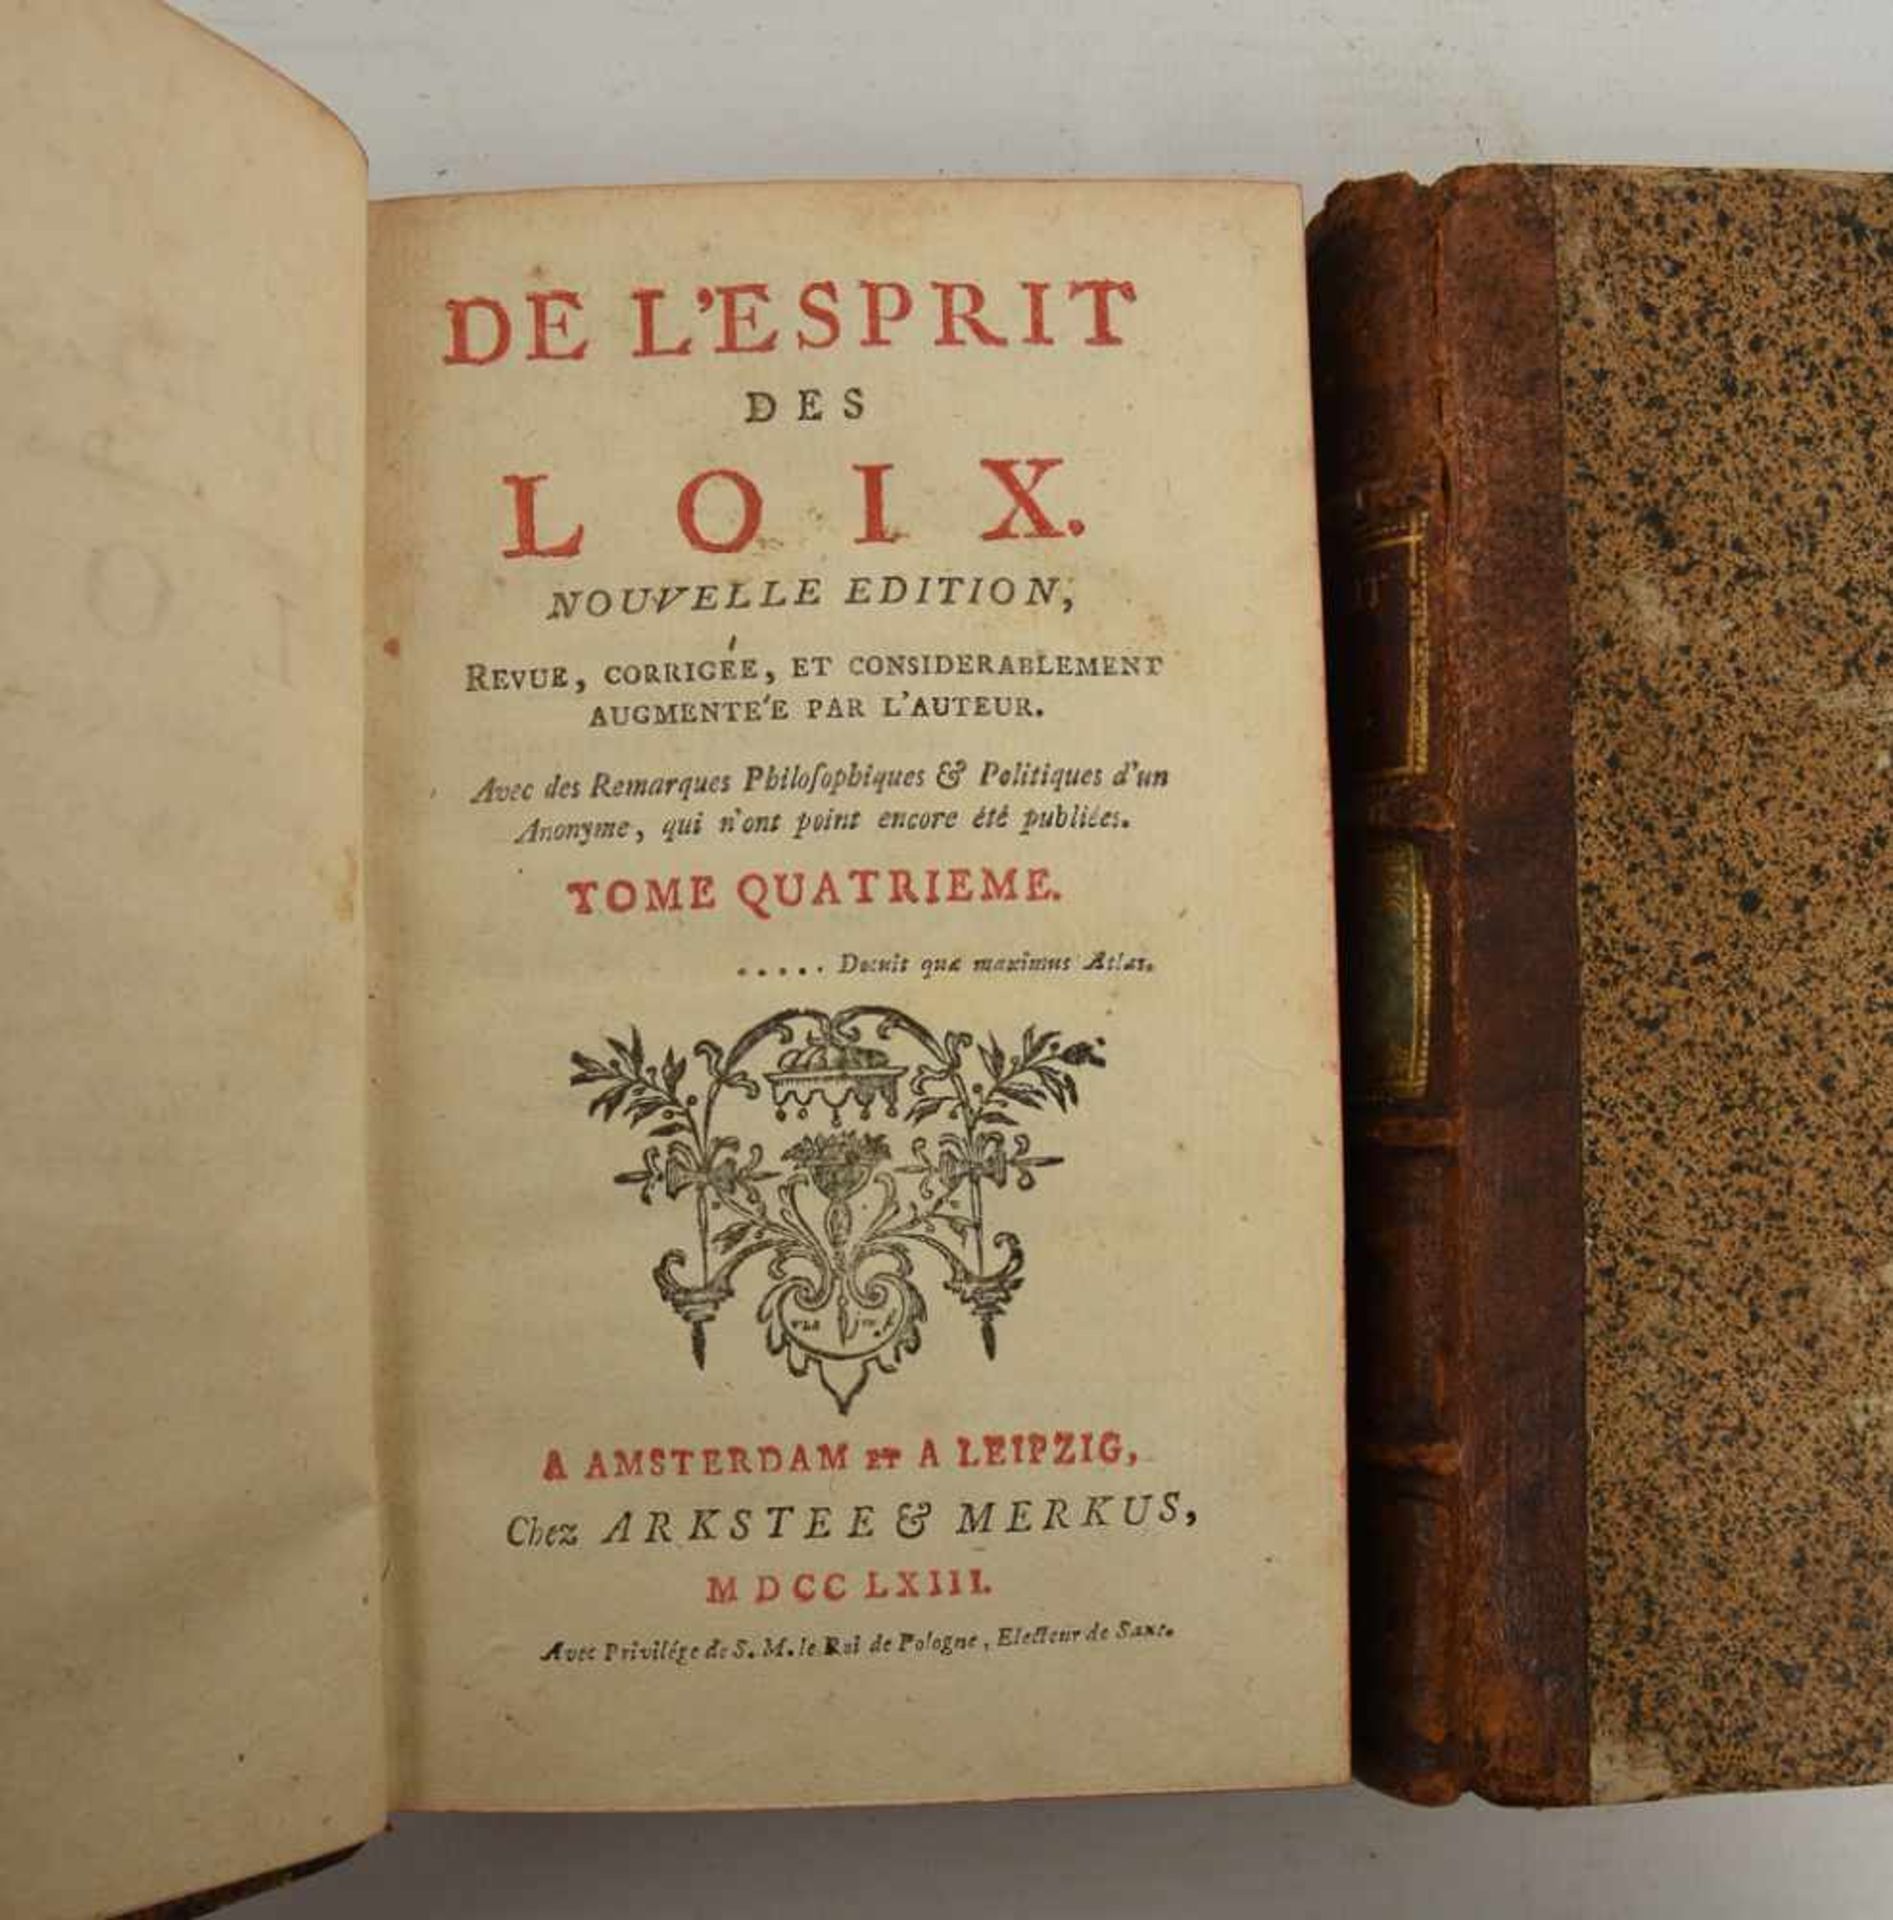 4 BÄNDE "DE LÉSPRIT DES LOIX", in Leder gebundene Ausgaben, Amsterdam/Leipzig 1763 - Bild 2 aus 3